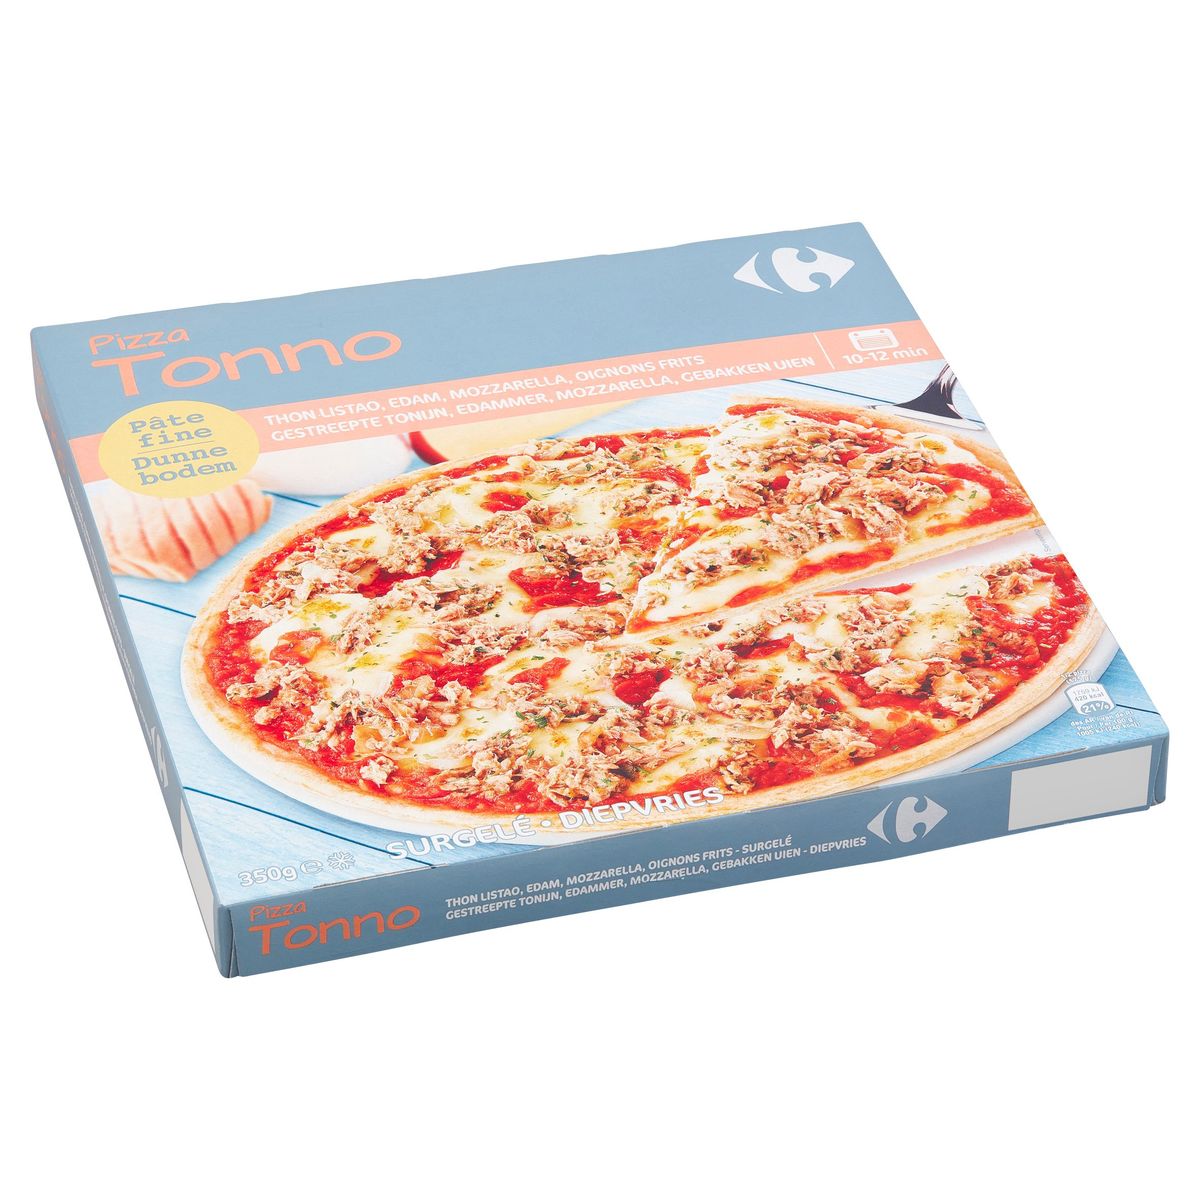 Carrefour Pizza Tonno Tonijn, Edammer, Mozzarella, Gebakken Uien 350 g